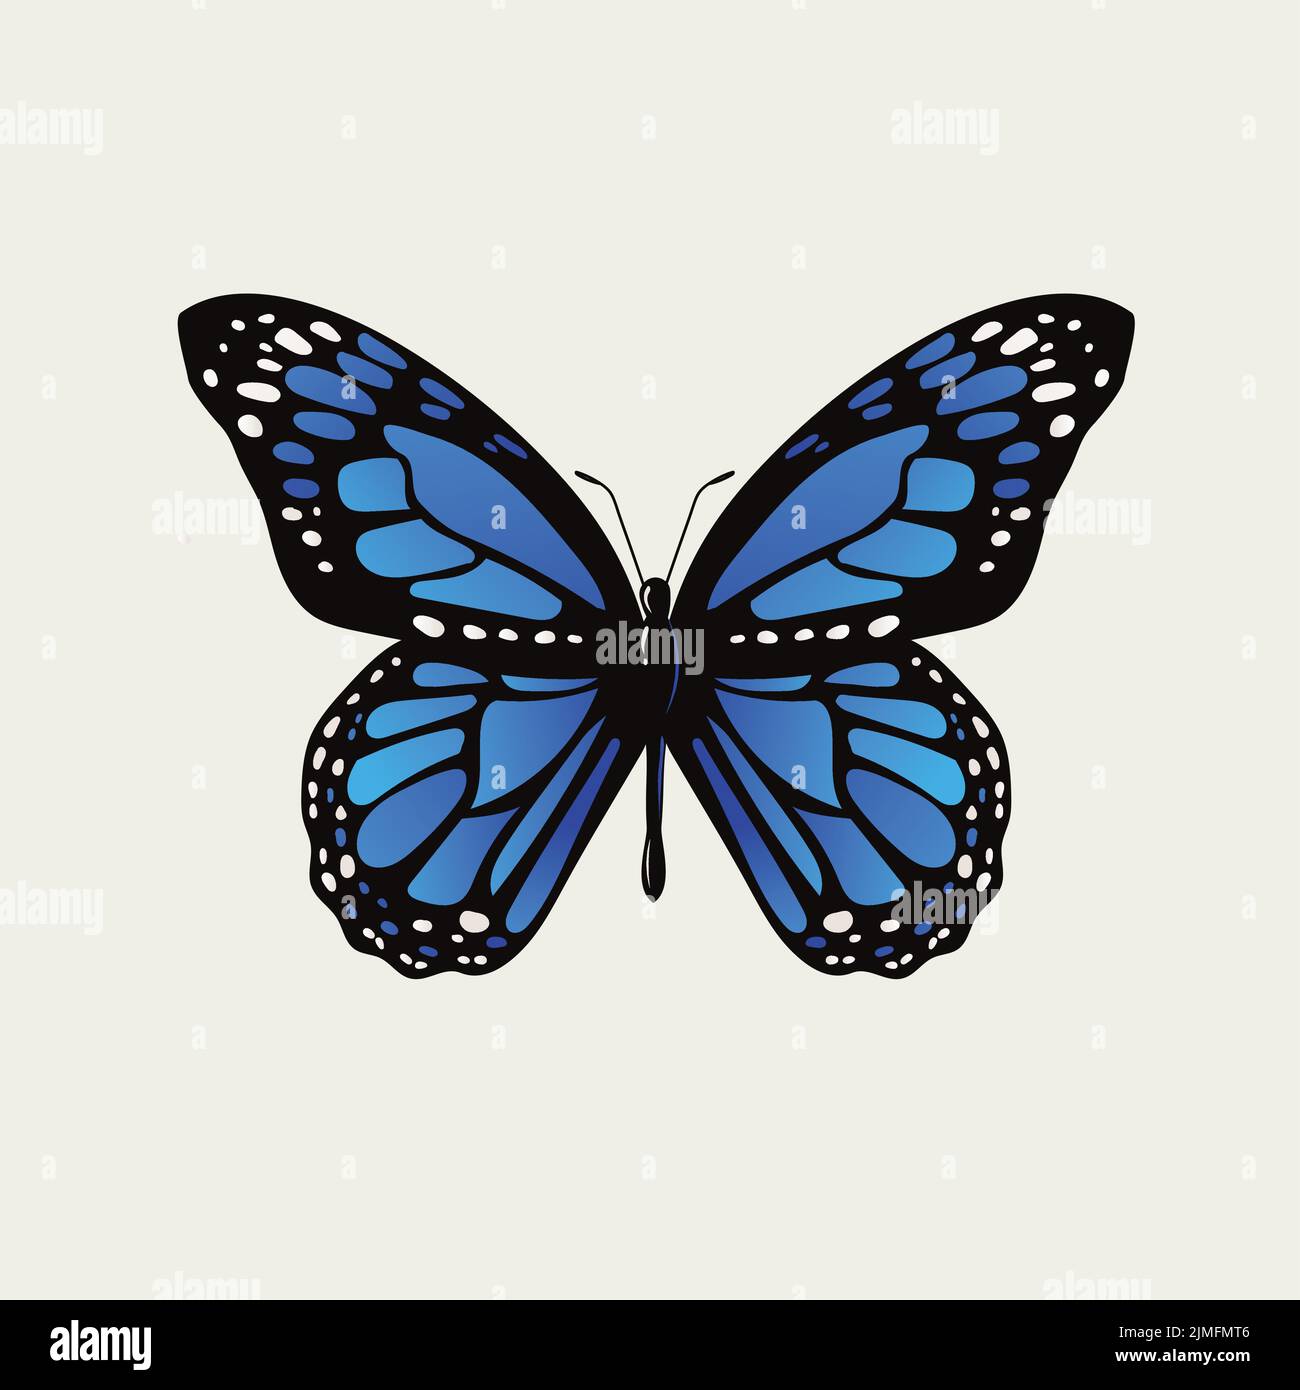 Motif vectoriel d'un papillon monarque bleu sur fond blanc Illustration de Vecteur